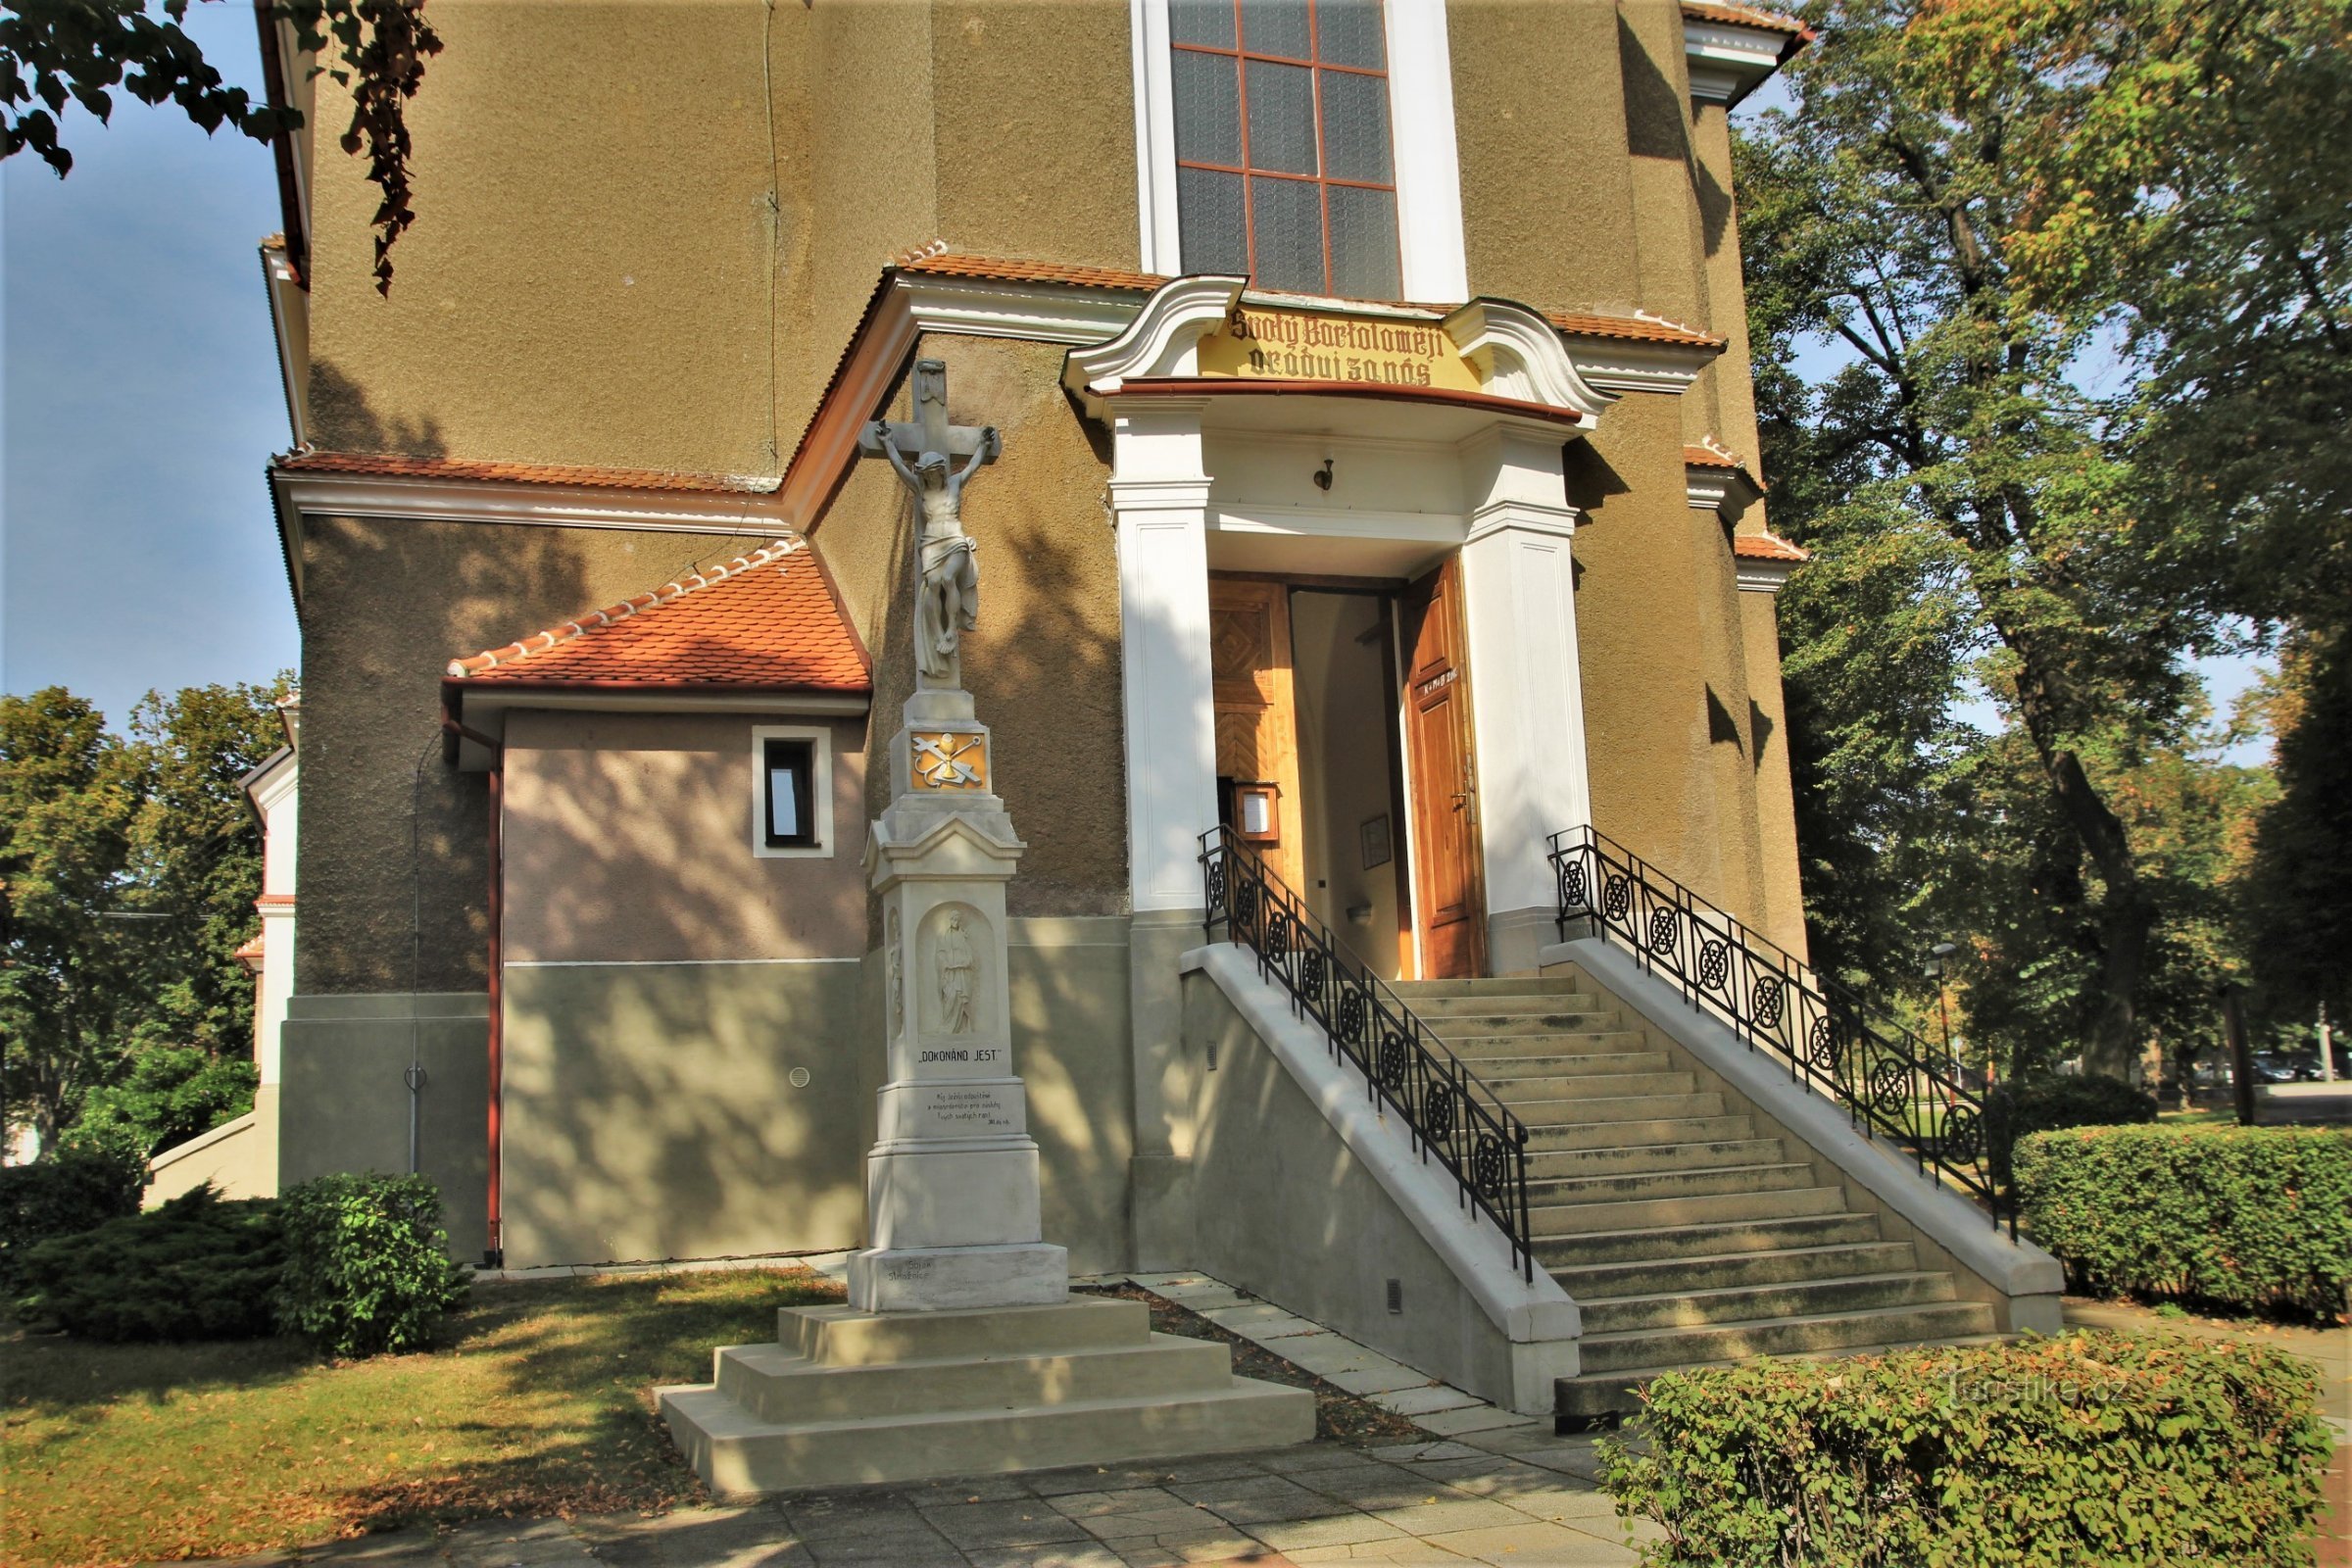 Wejście do kościoła z kamiennym krzyżem